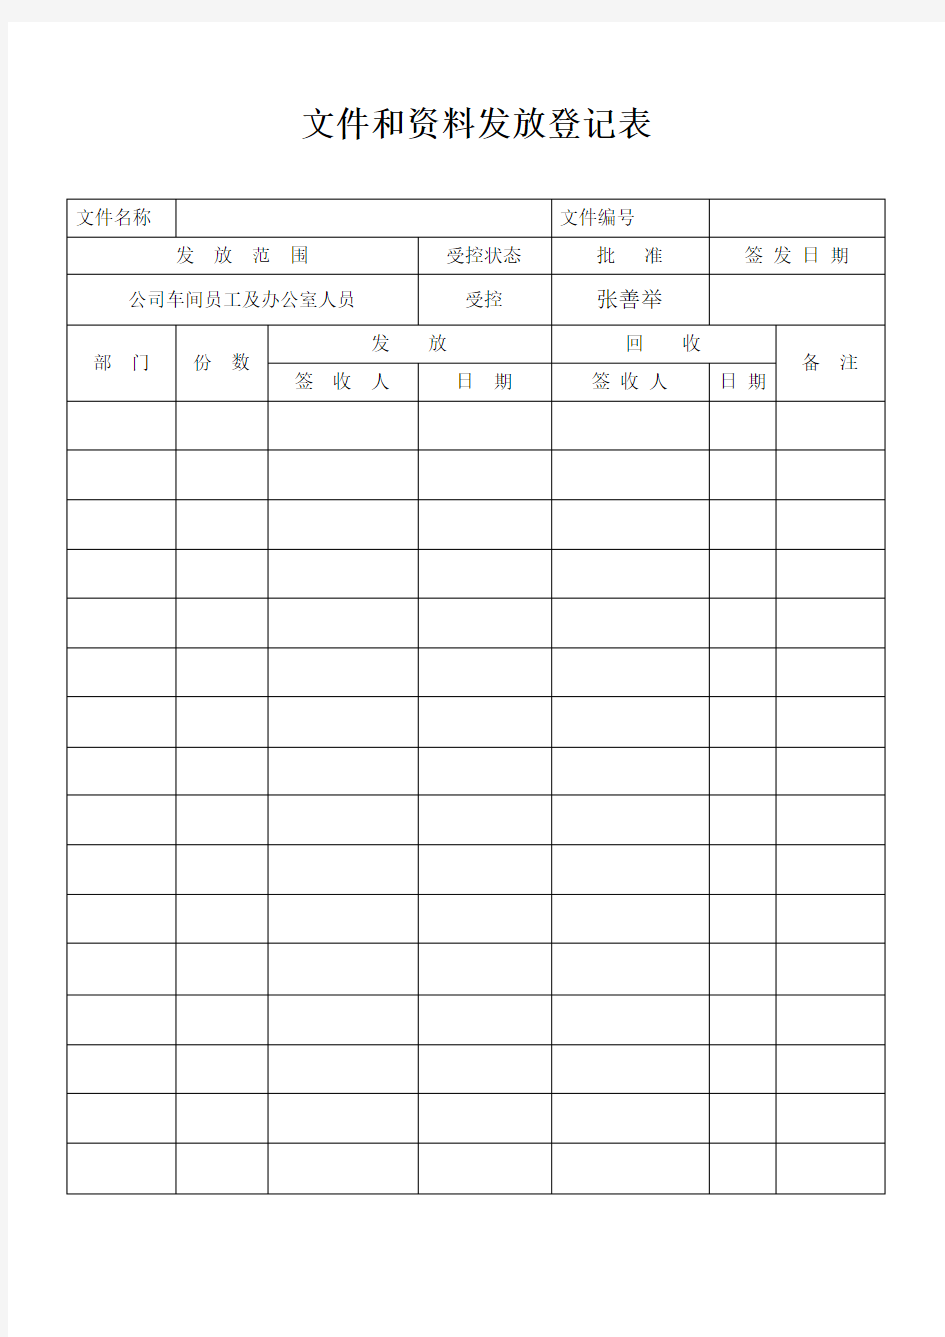 规章制度、作业指导书发放登记表